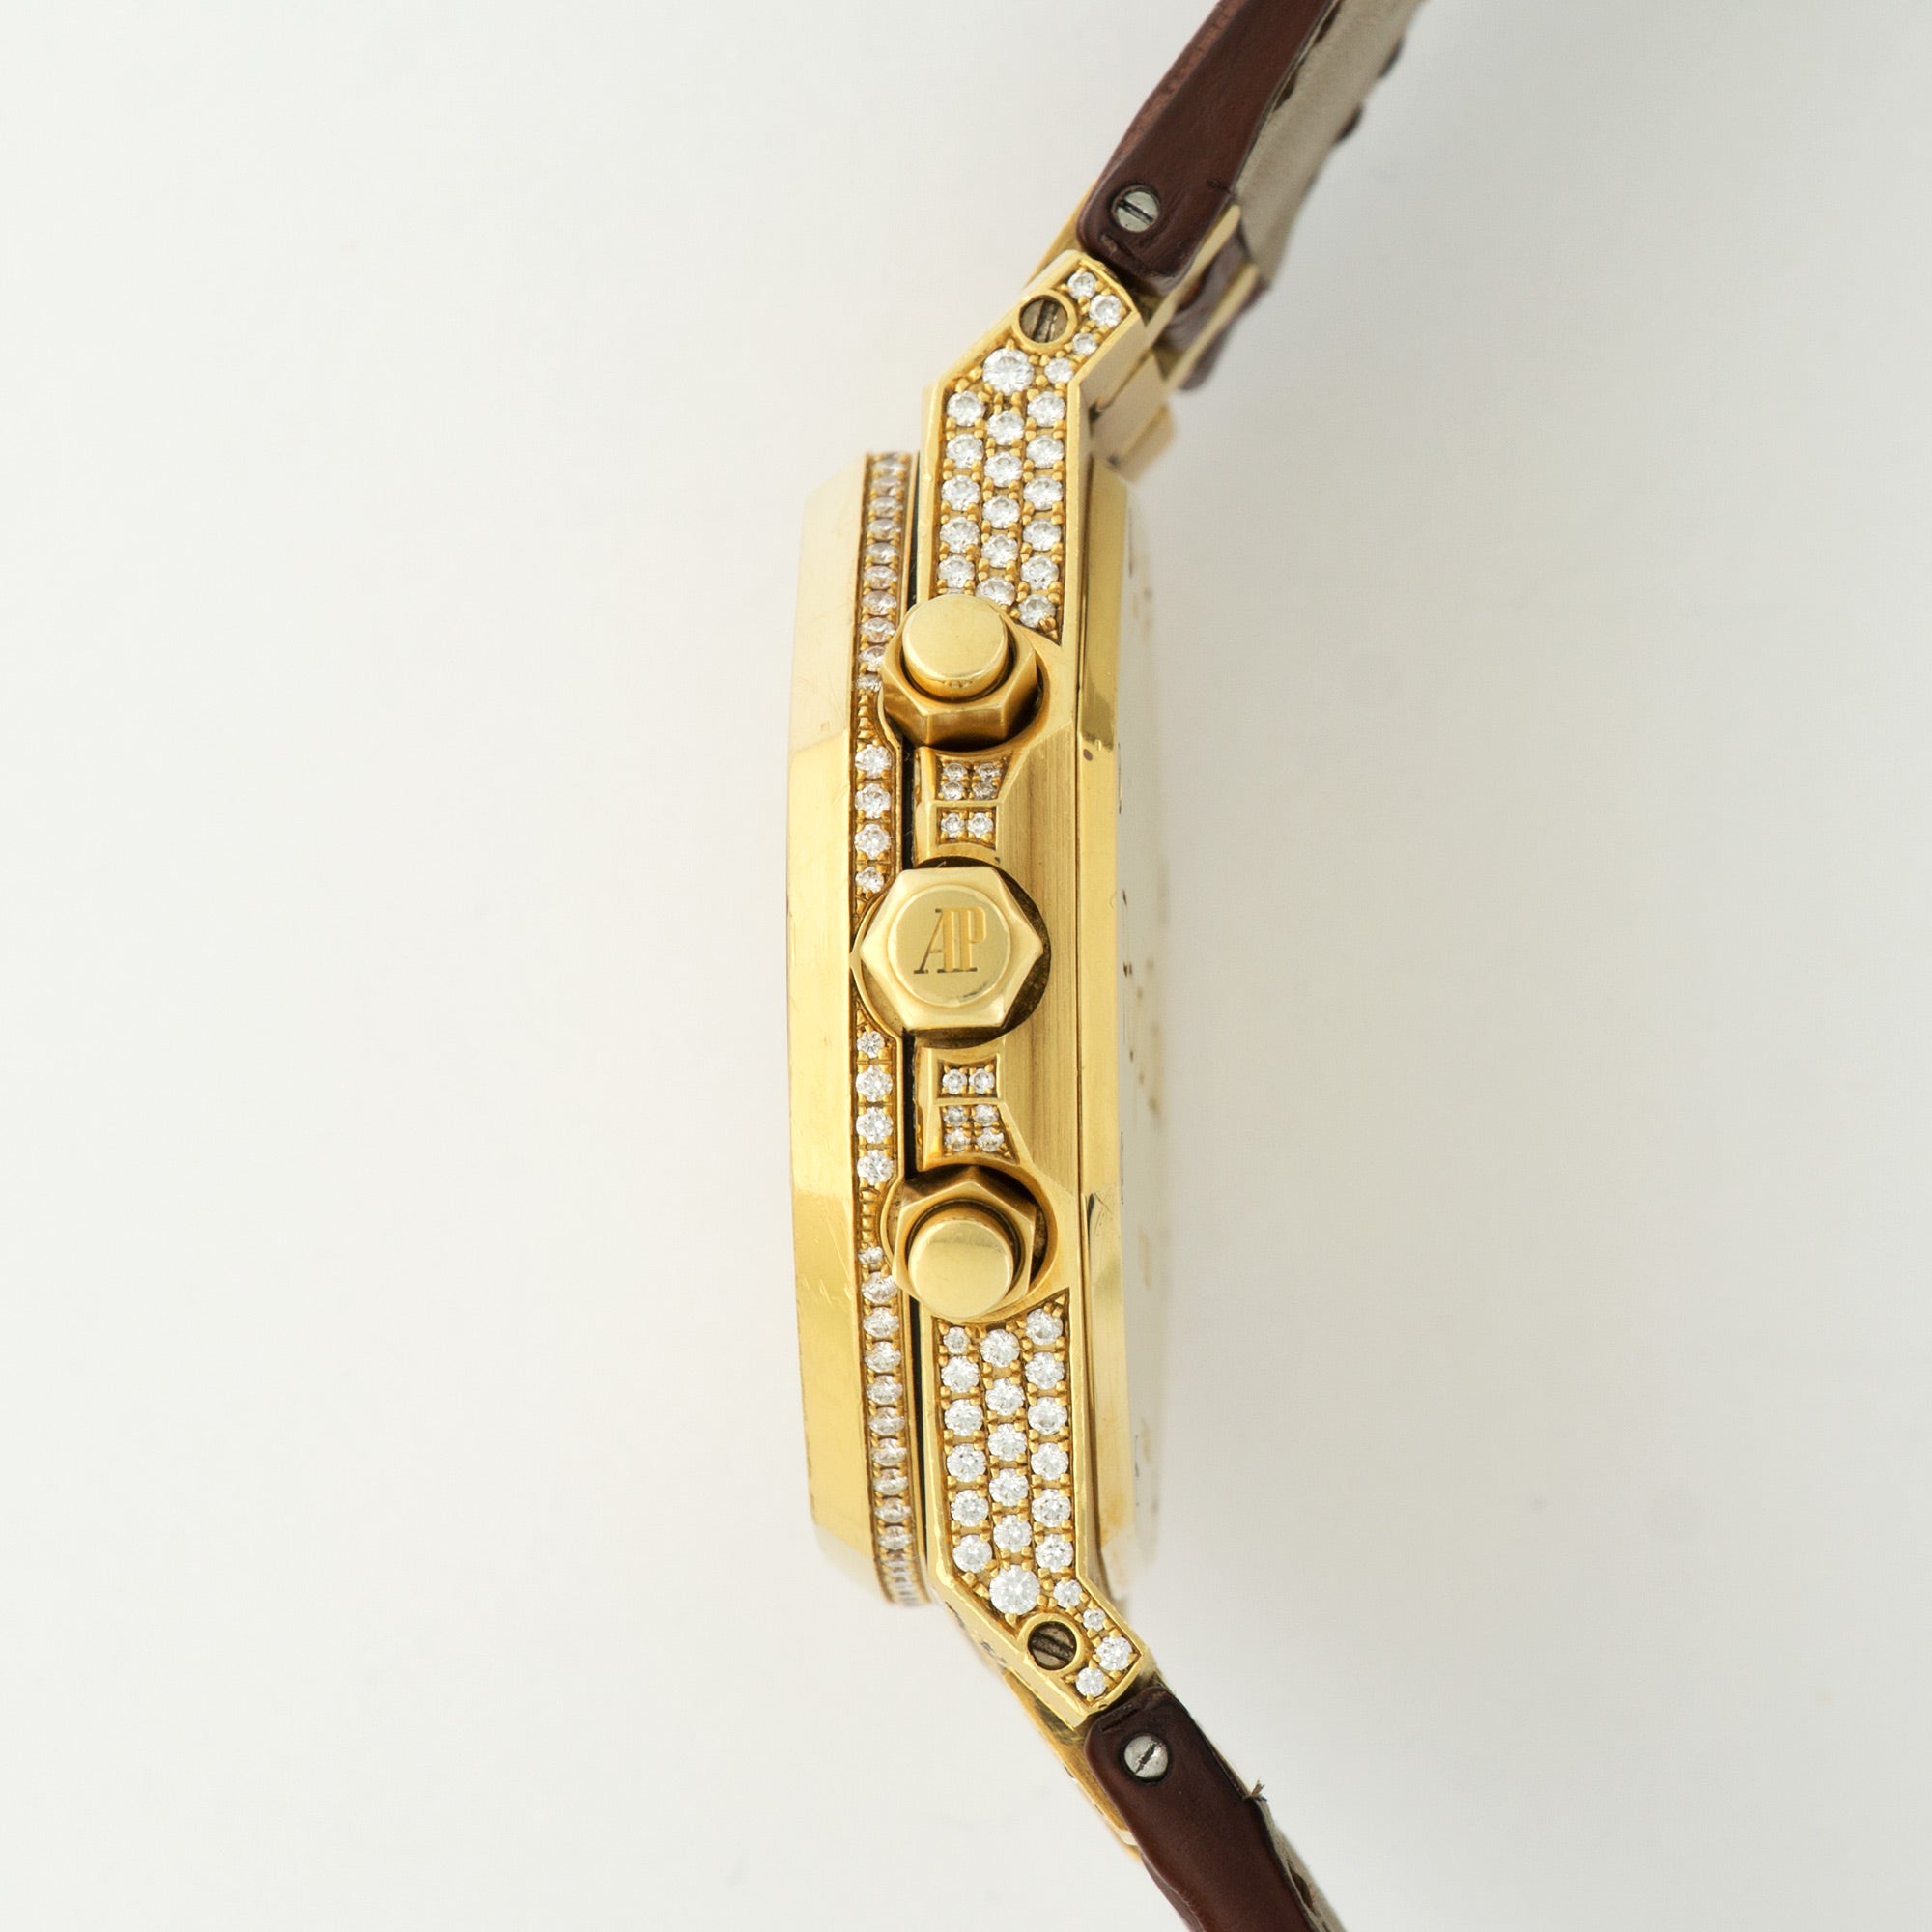 Audemars Piguet - Audemars Piguet Yellow Gold Royal Oak Chrono Diamond Watch Ref. 26067 - The Keystone Watches